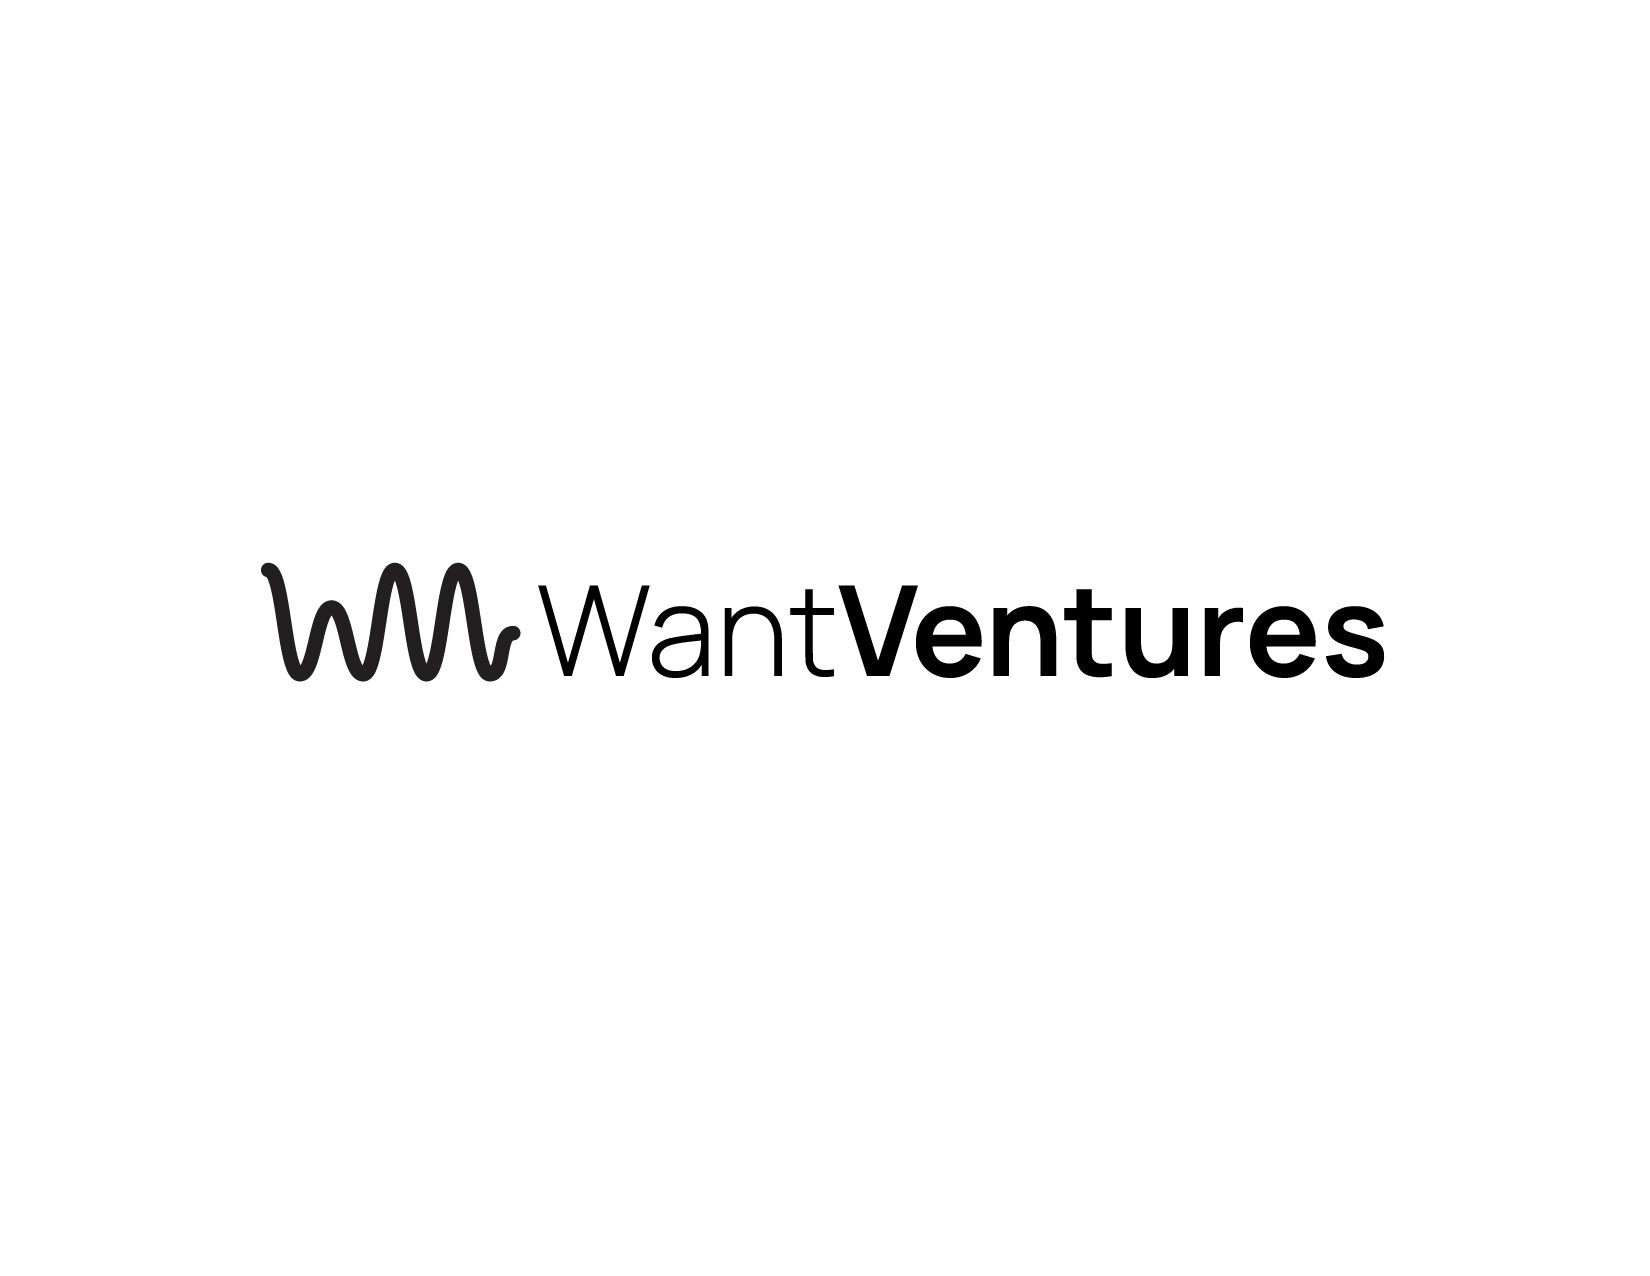 Want Ventures